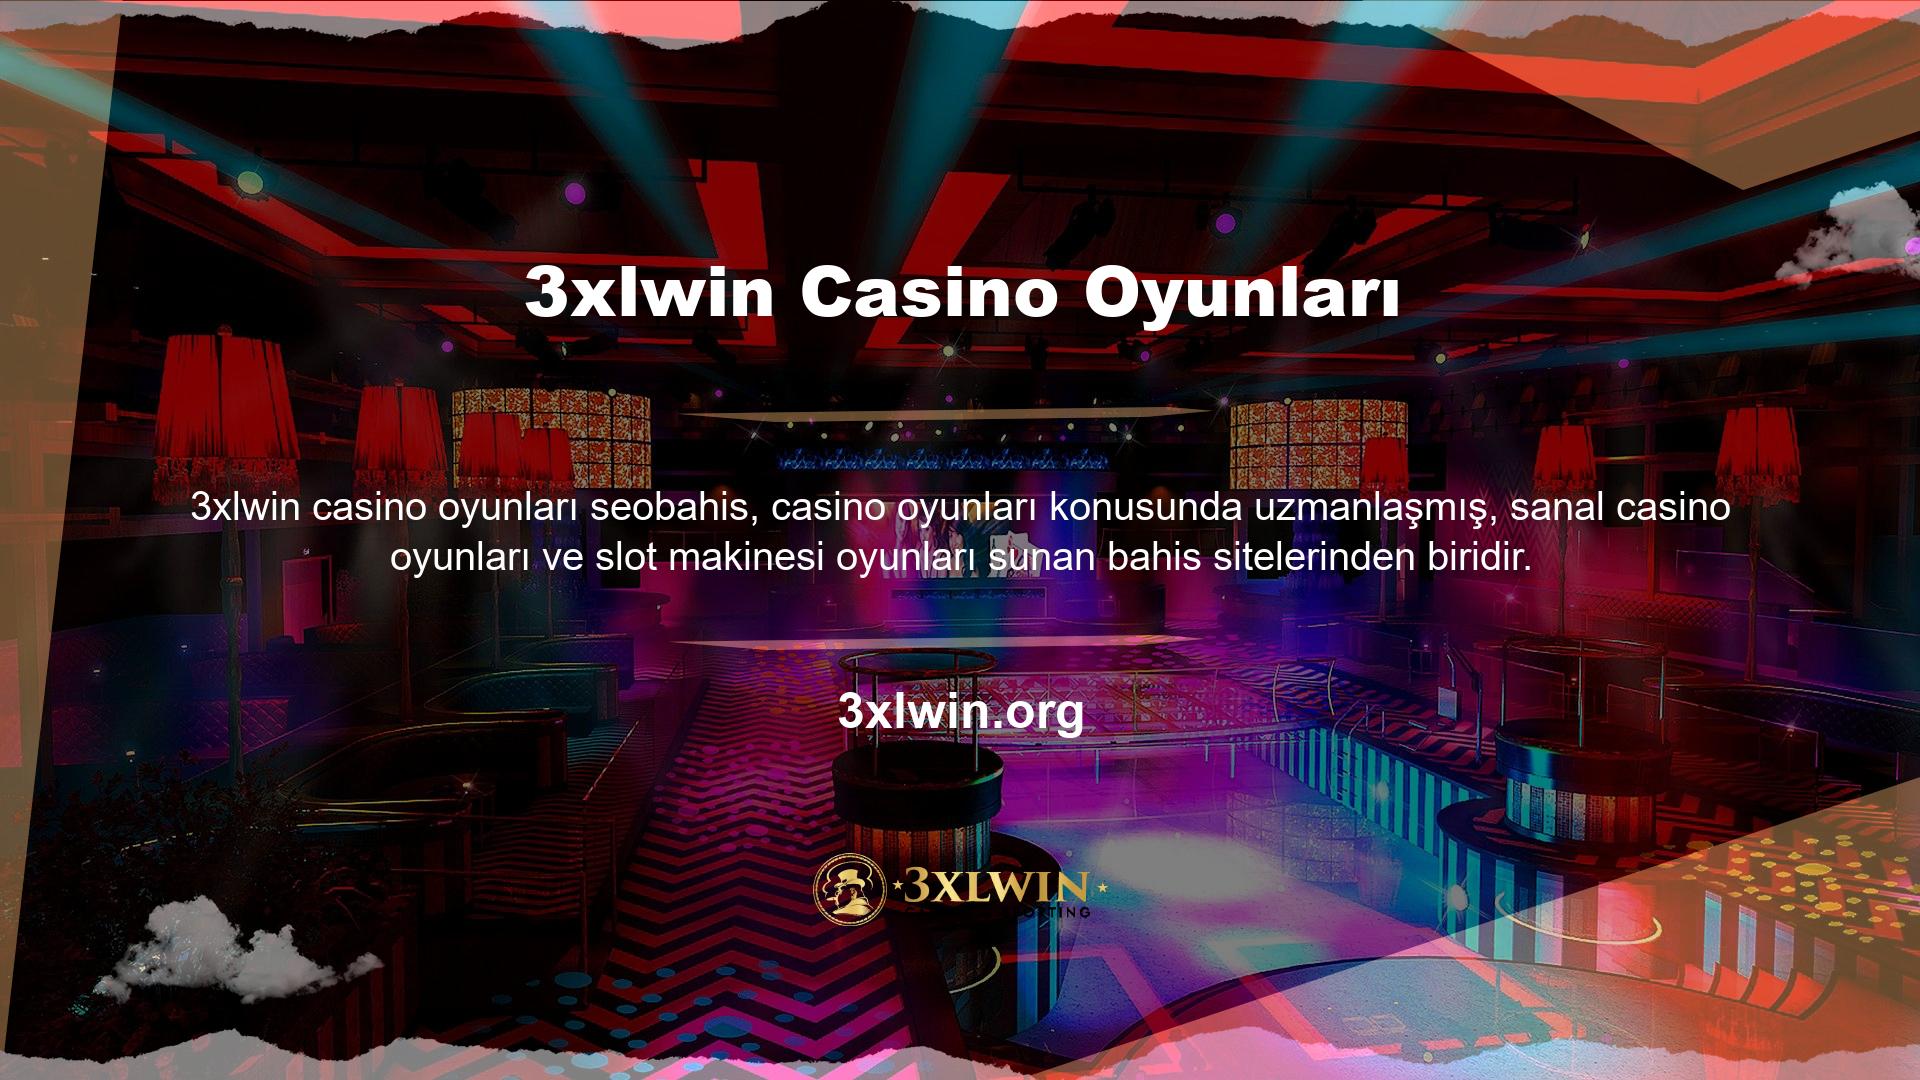 3xlwin canlı casino oyunlarında üyelerin bahis yaparken sosyalleşebilecekleri ve sohbet edebilecekleri bir alan bulunmaktadır